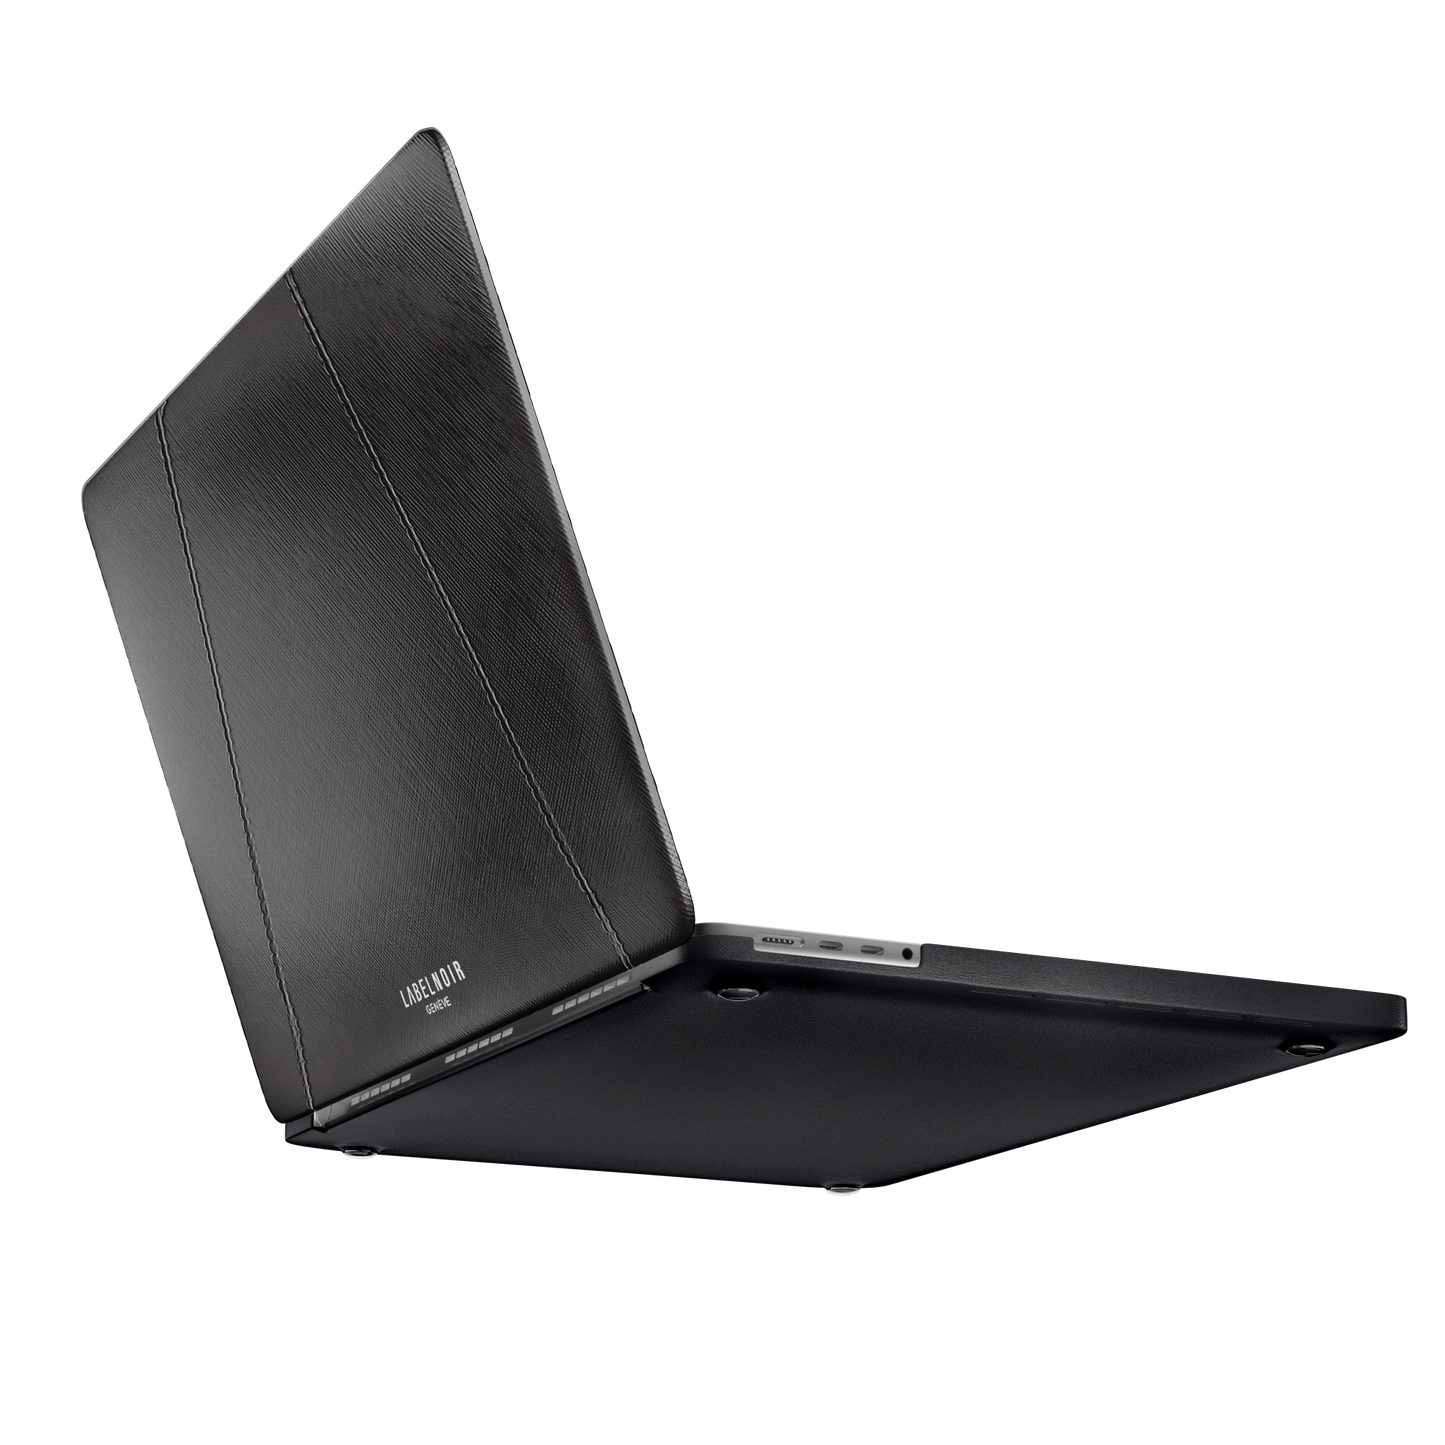 MacBook Pro 13-inch Black Saffiano Case